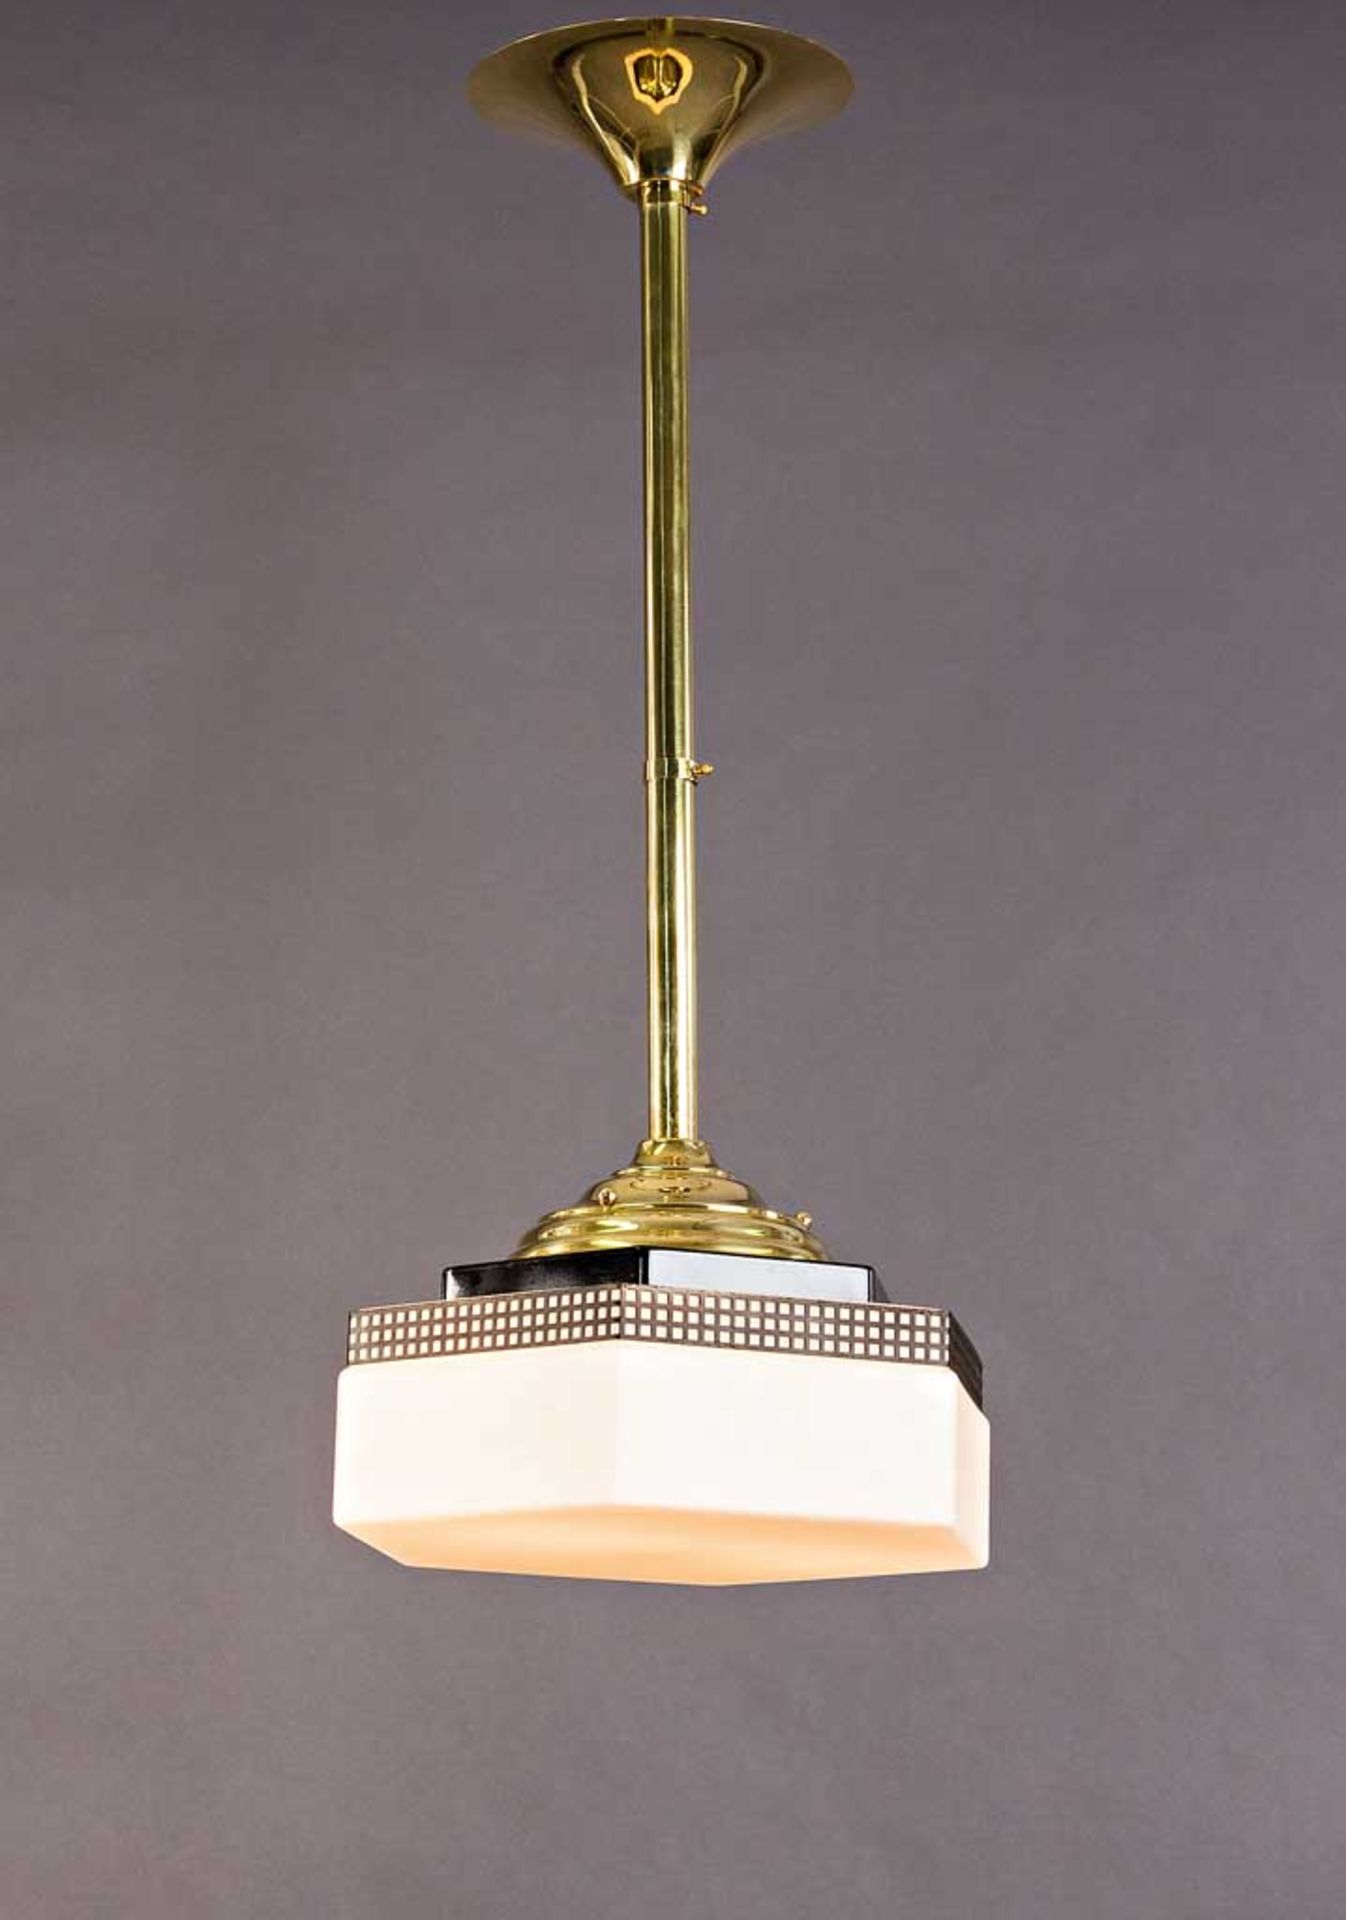 Art-Déco-Lampe. Messing mit schwarz lackiertem Plafond. Hexagonaler Milchglasschirm. Um 1915. H 84